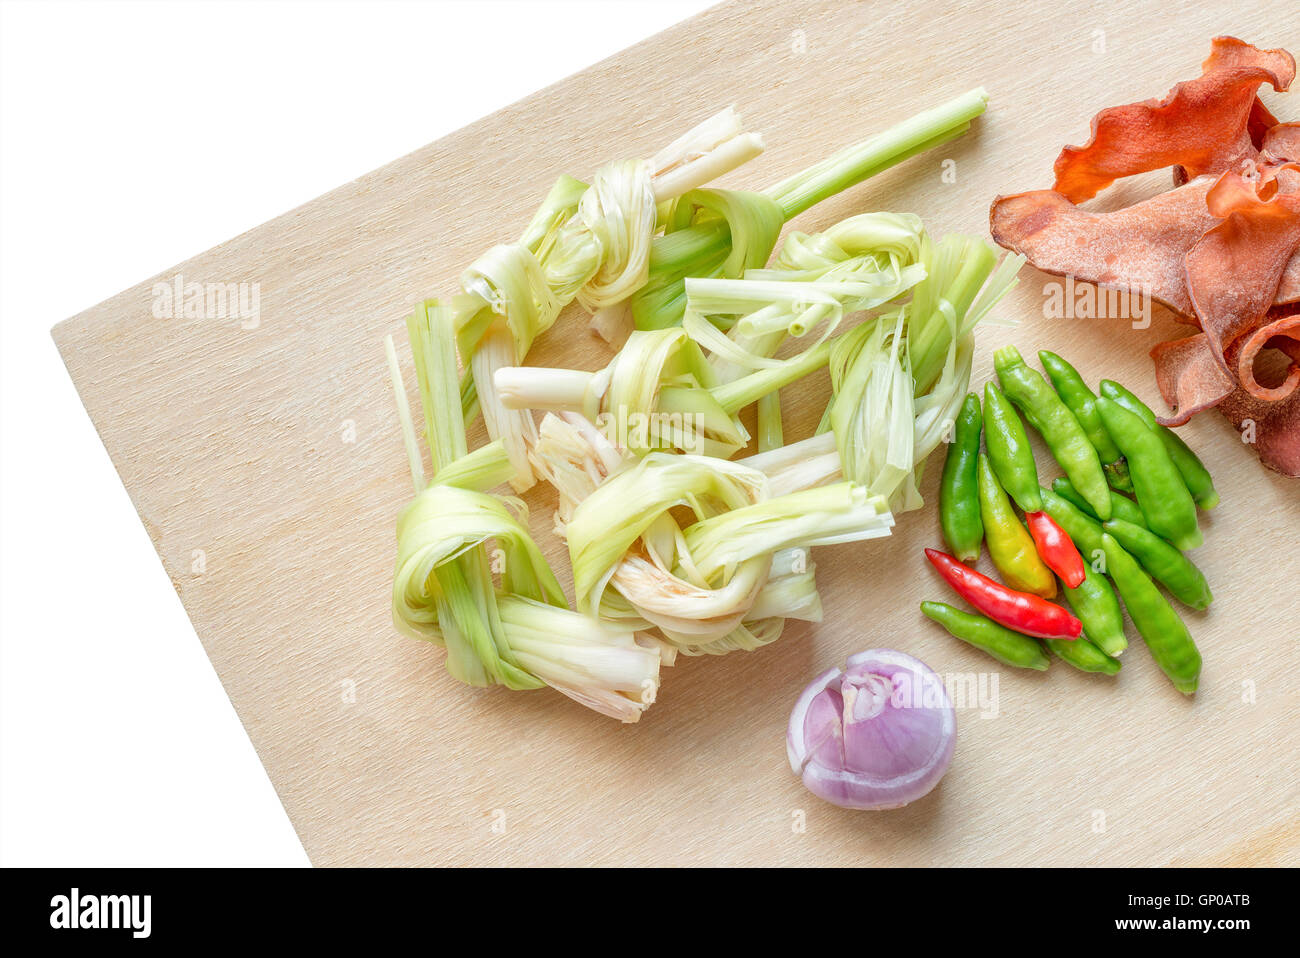 Standard-pflanzliche Zutaten für Thai-scharf-Suppe, saure Suppe, Curry. Draufsicht auf Holzutensilien. Isoliert auf weißem Hintergrund. Co Stockfoto